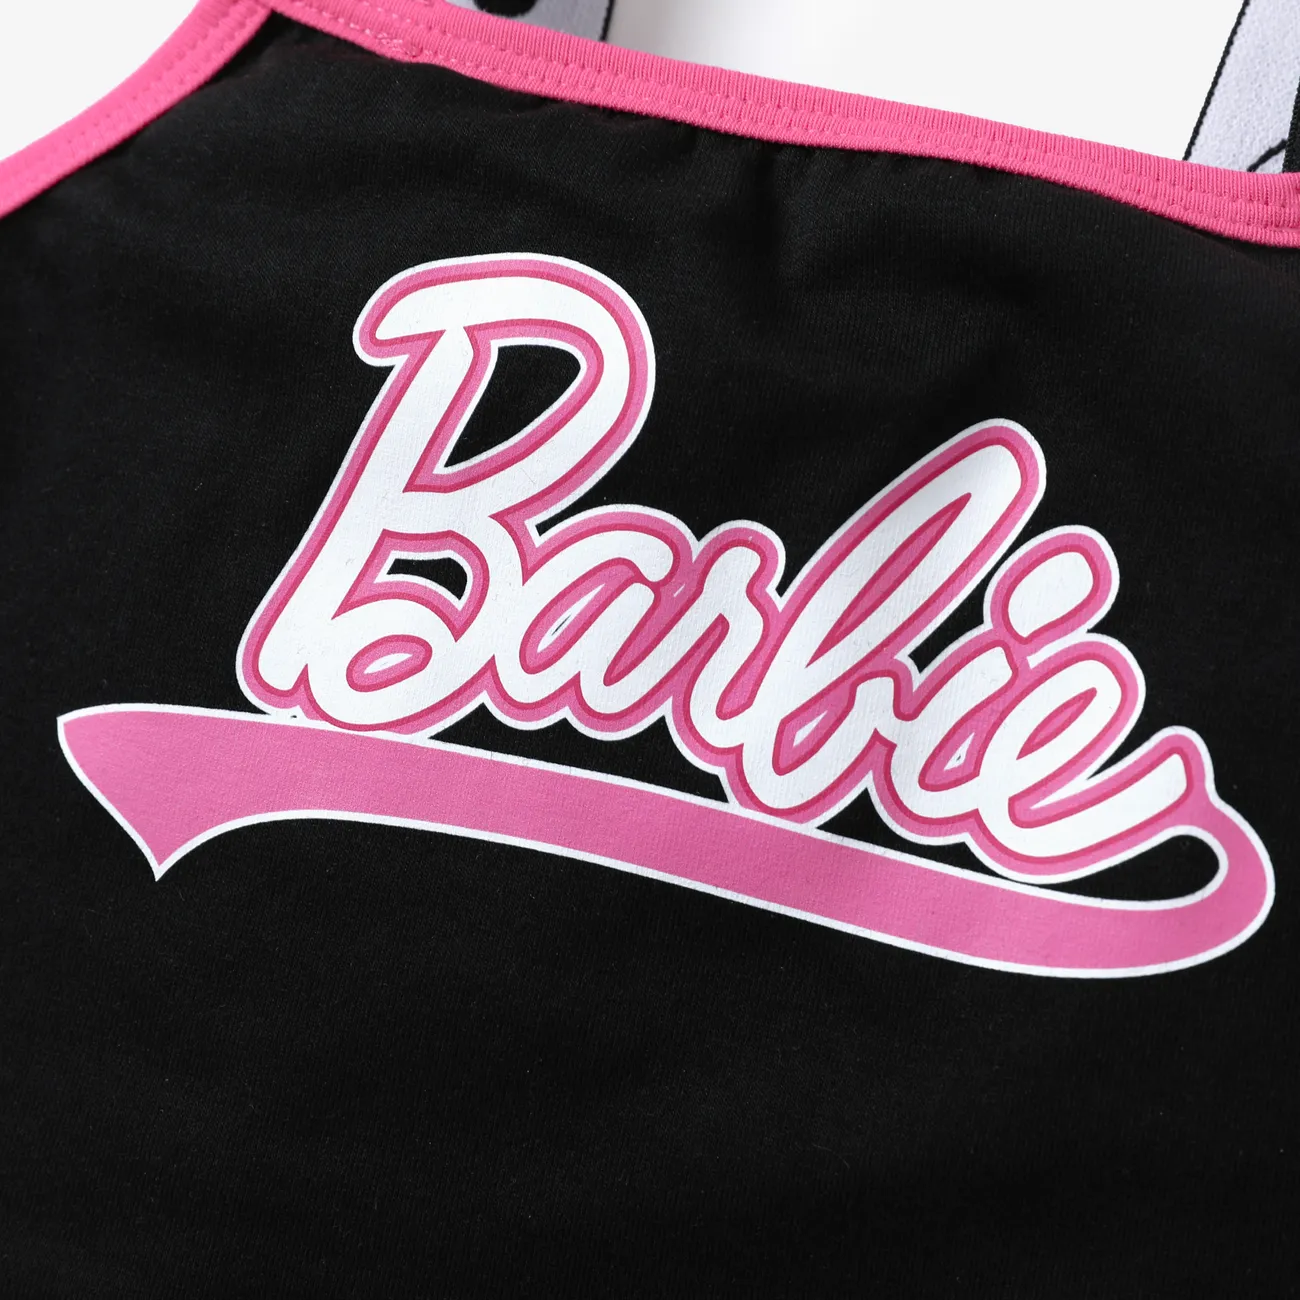 Barbie 2 unidades Menina Bolso cosido Casual Conjuntos cor de rosa big image 1